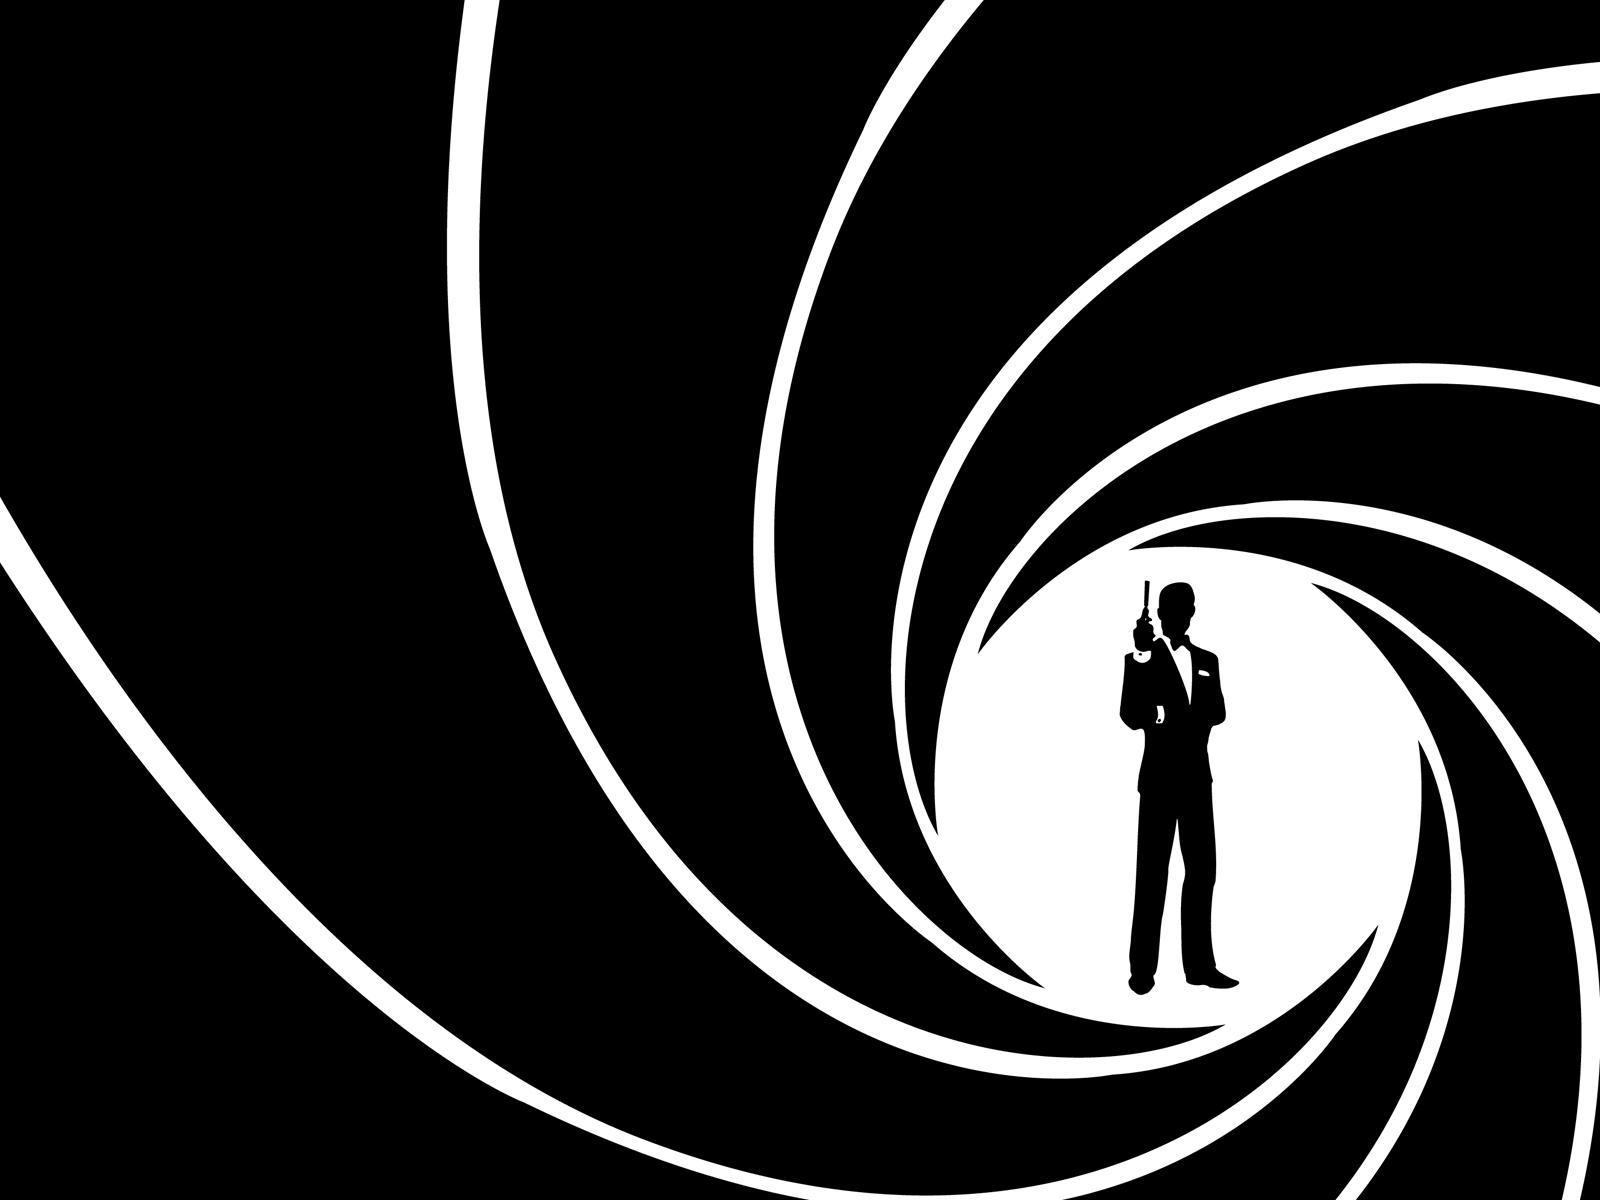 MATERNITY (CXVII): ¿QUÉ SE PUEDE APRENDER DE 007?